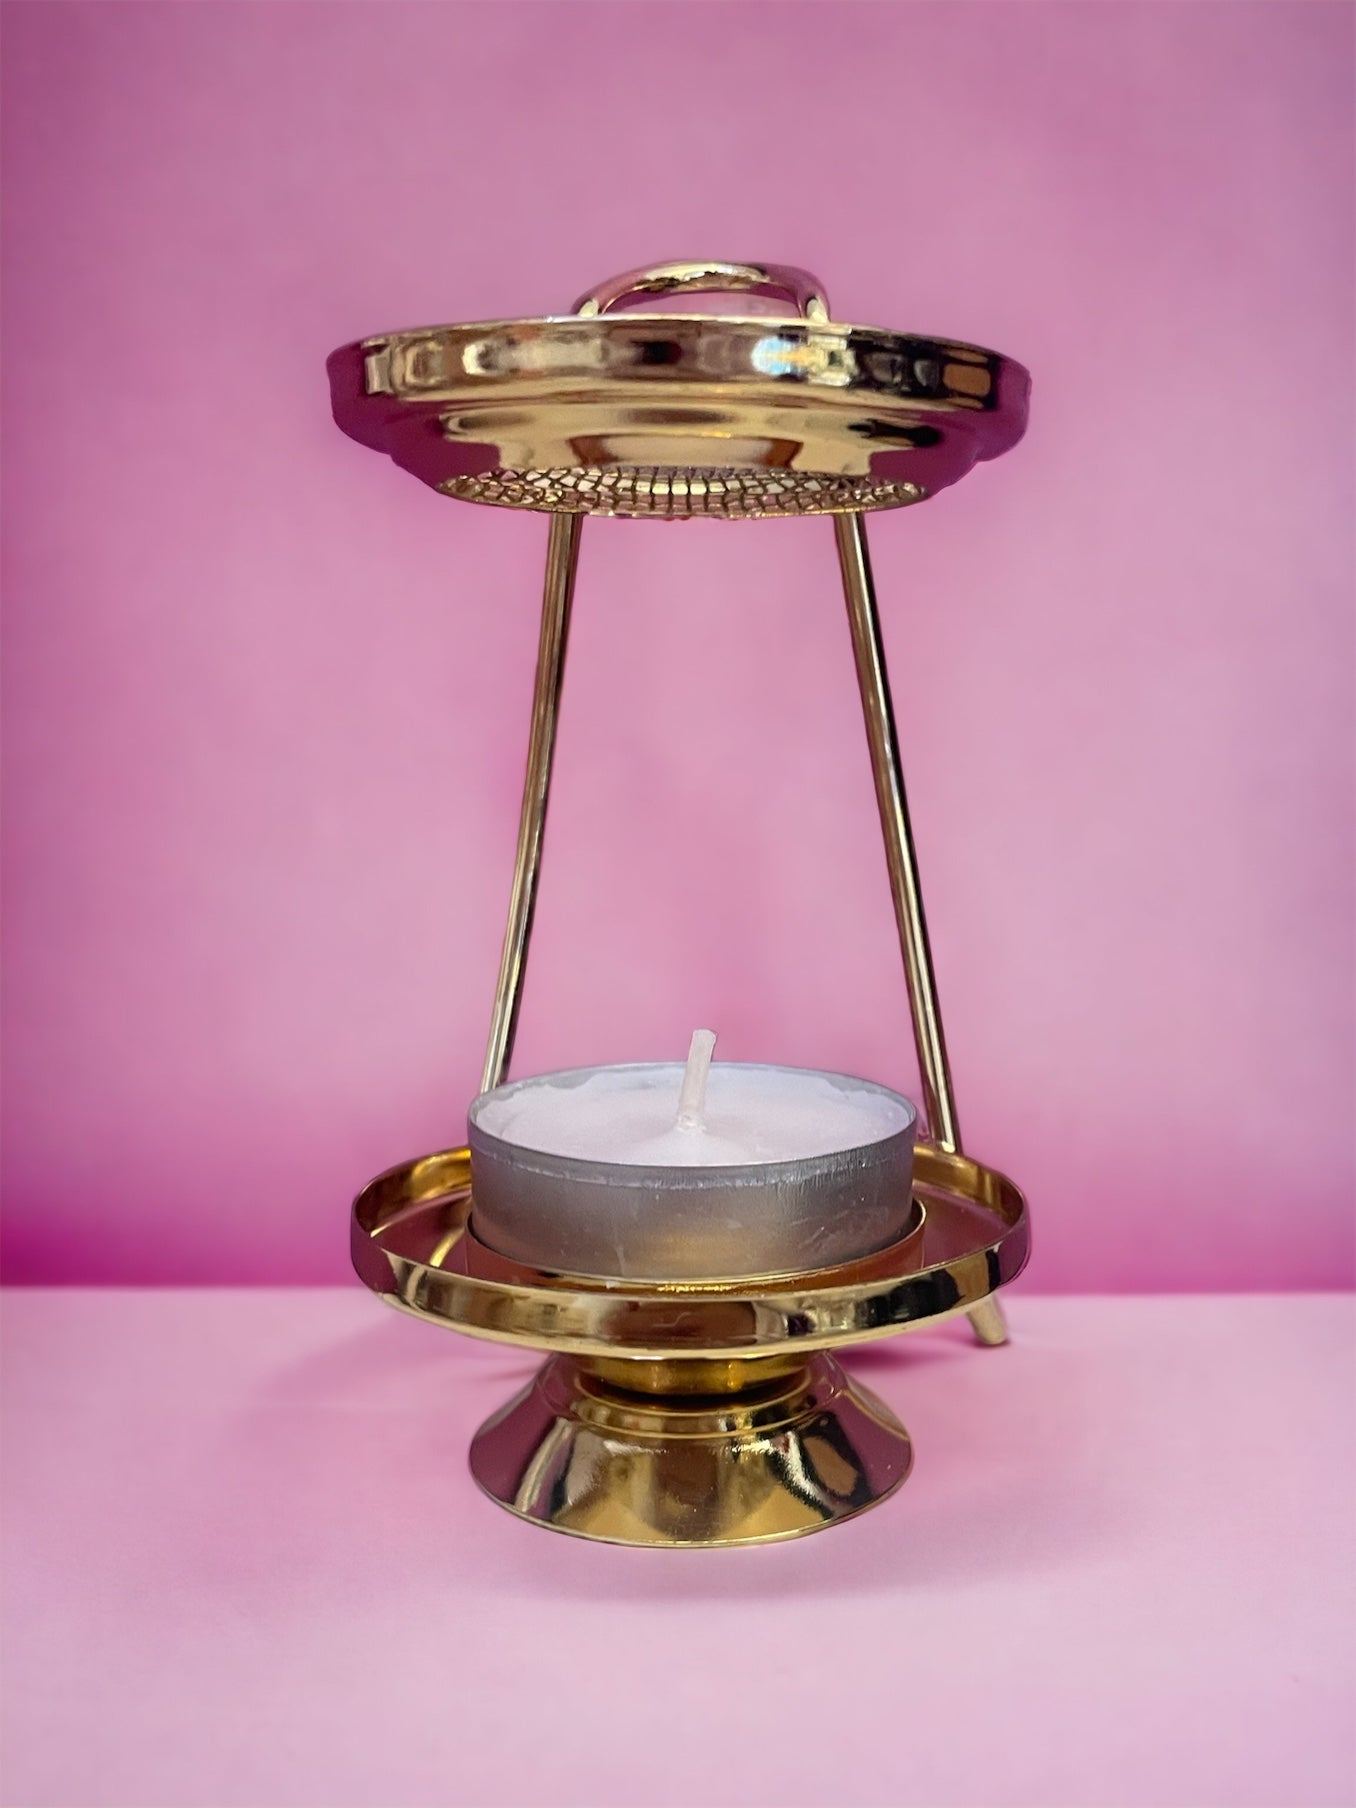 Kit Brucia incenso in ottone dorato con incenso e due candele